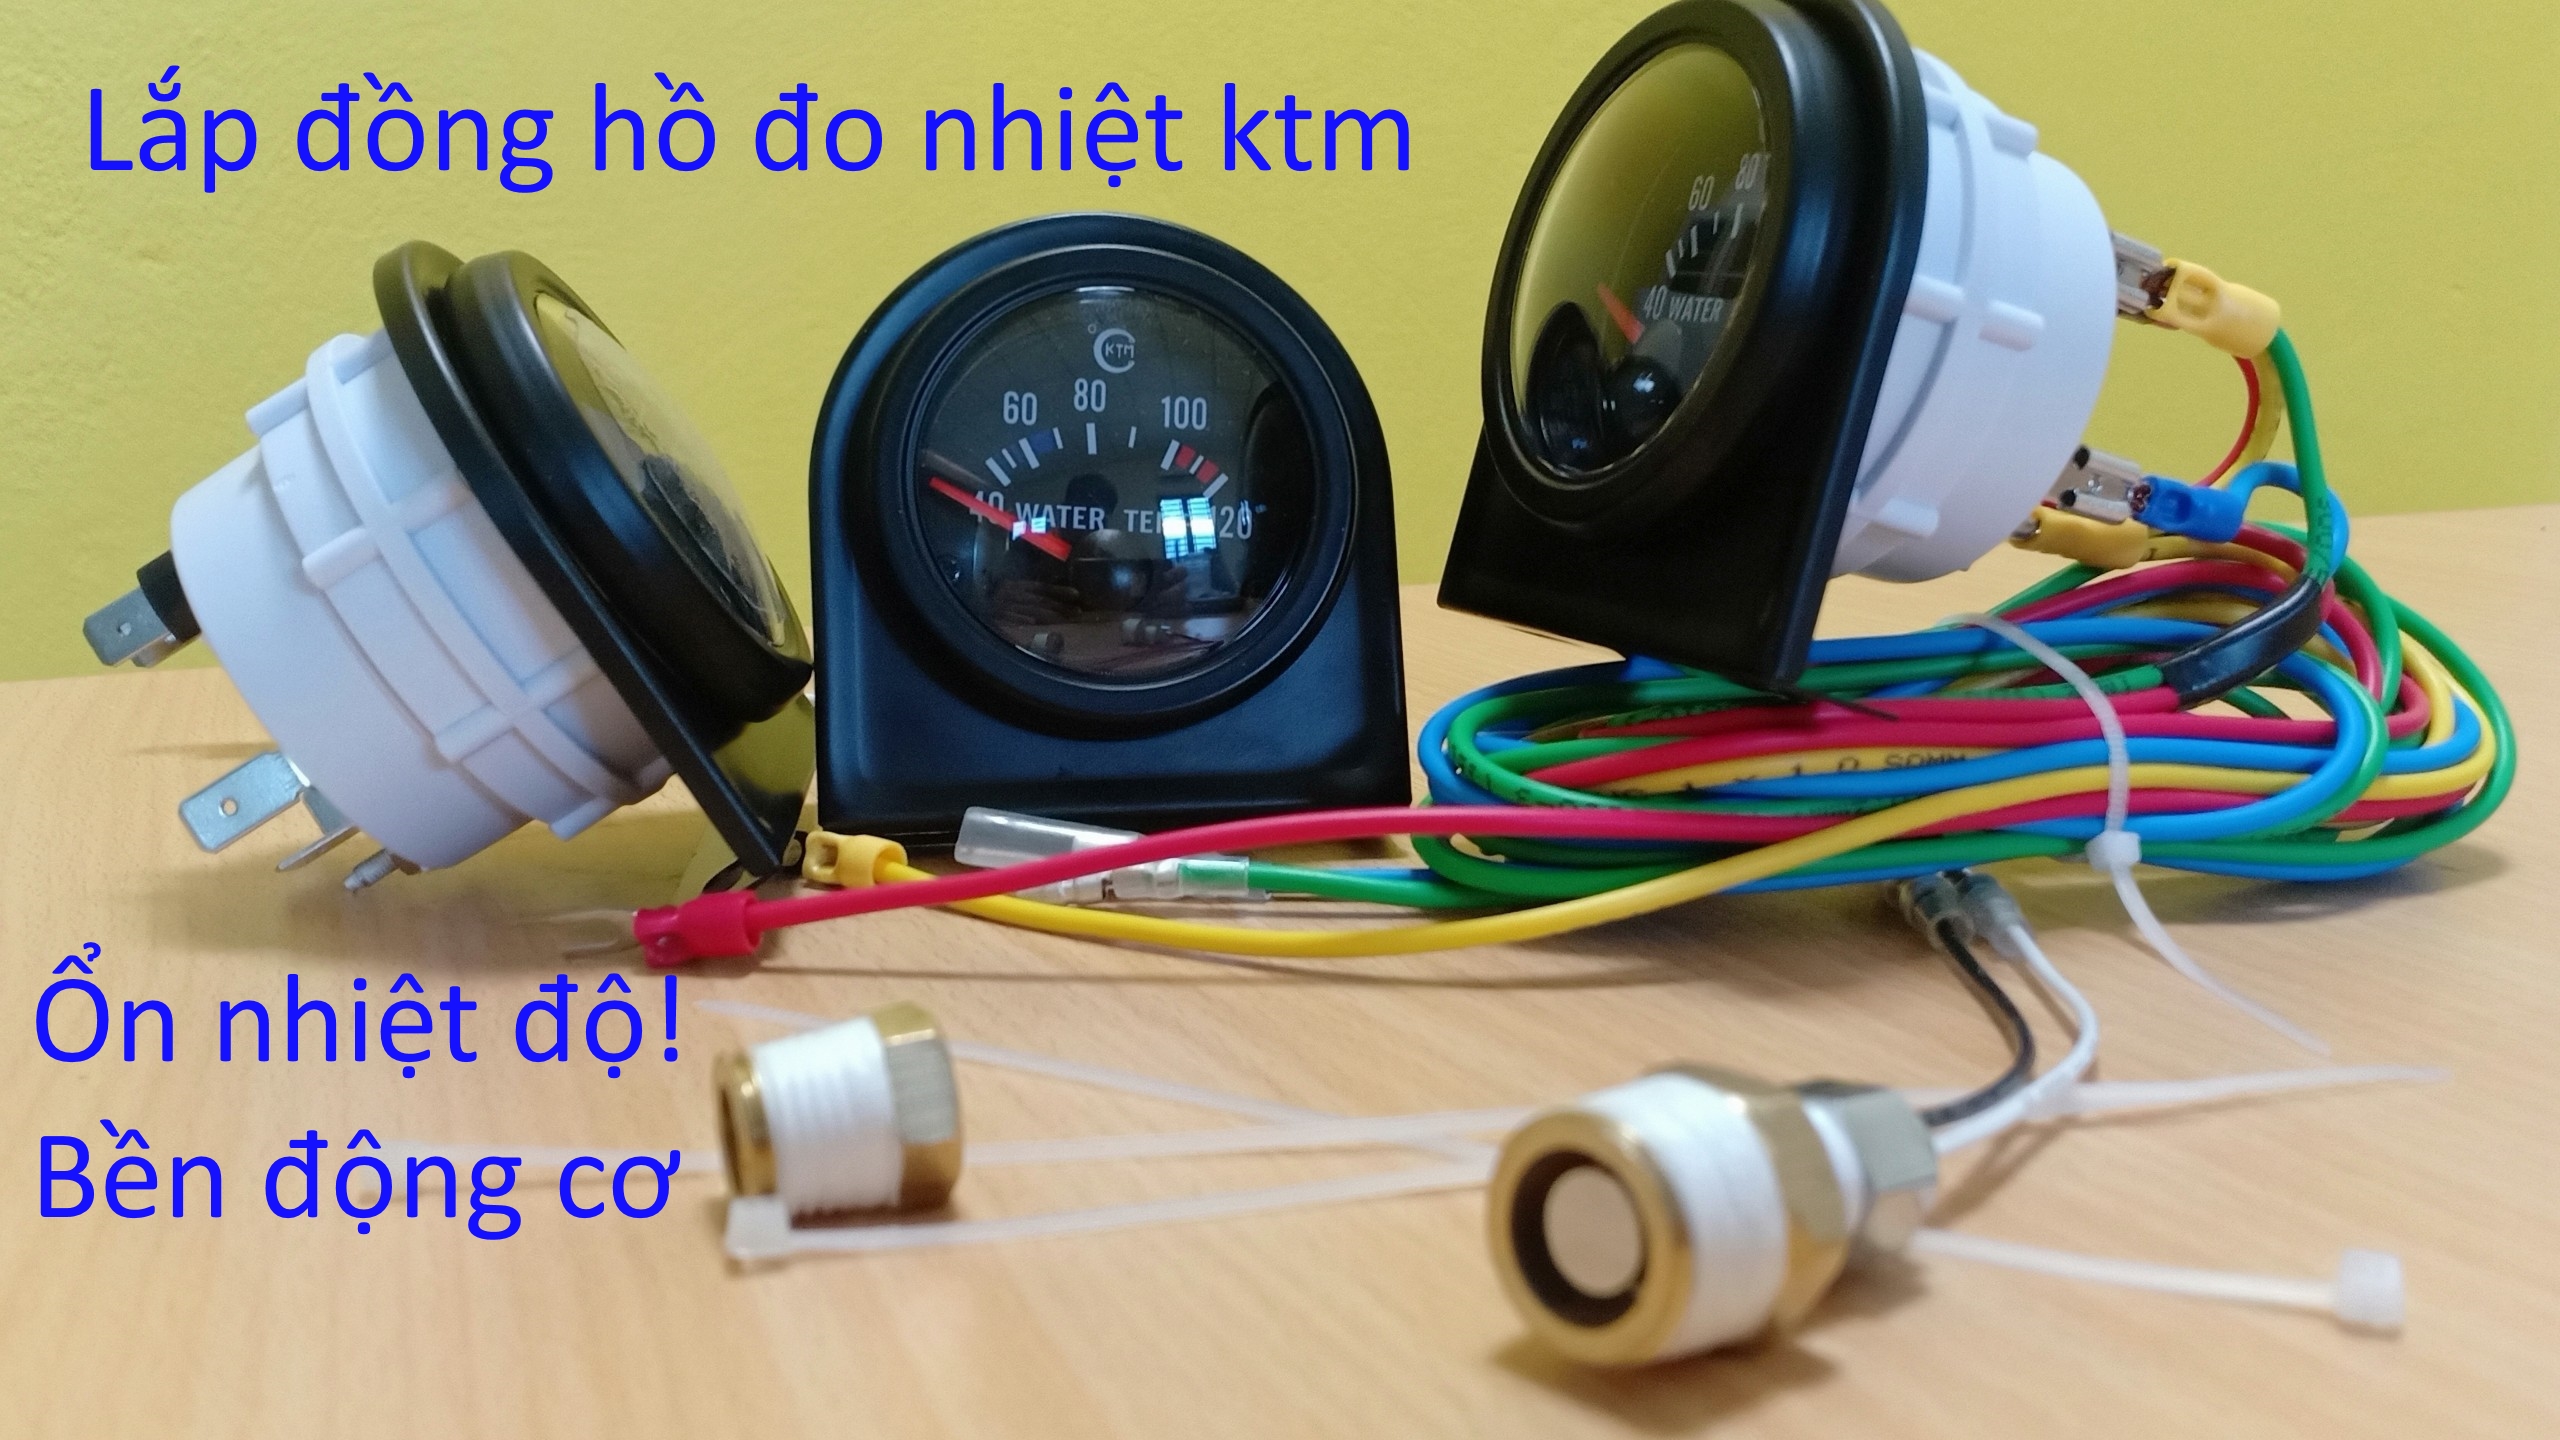 Đồng hồ báo nhiệt kính cầu KTM dạng kim 